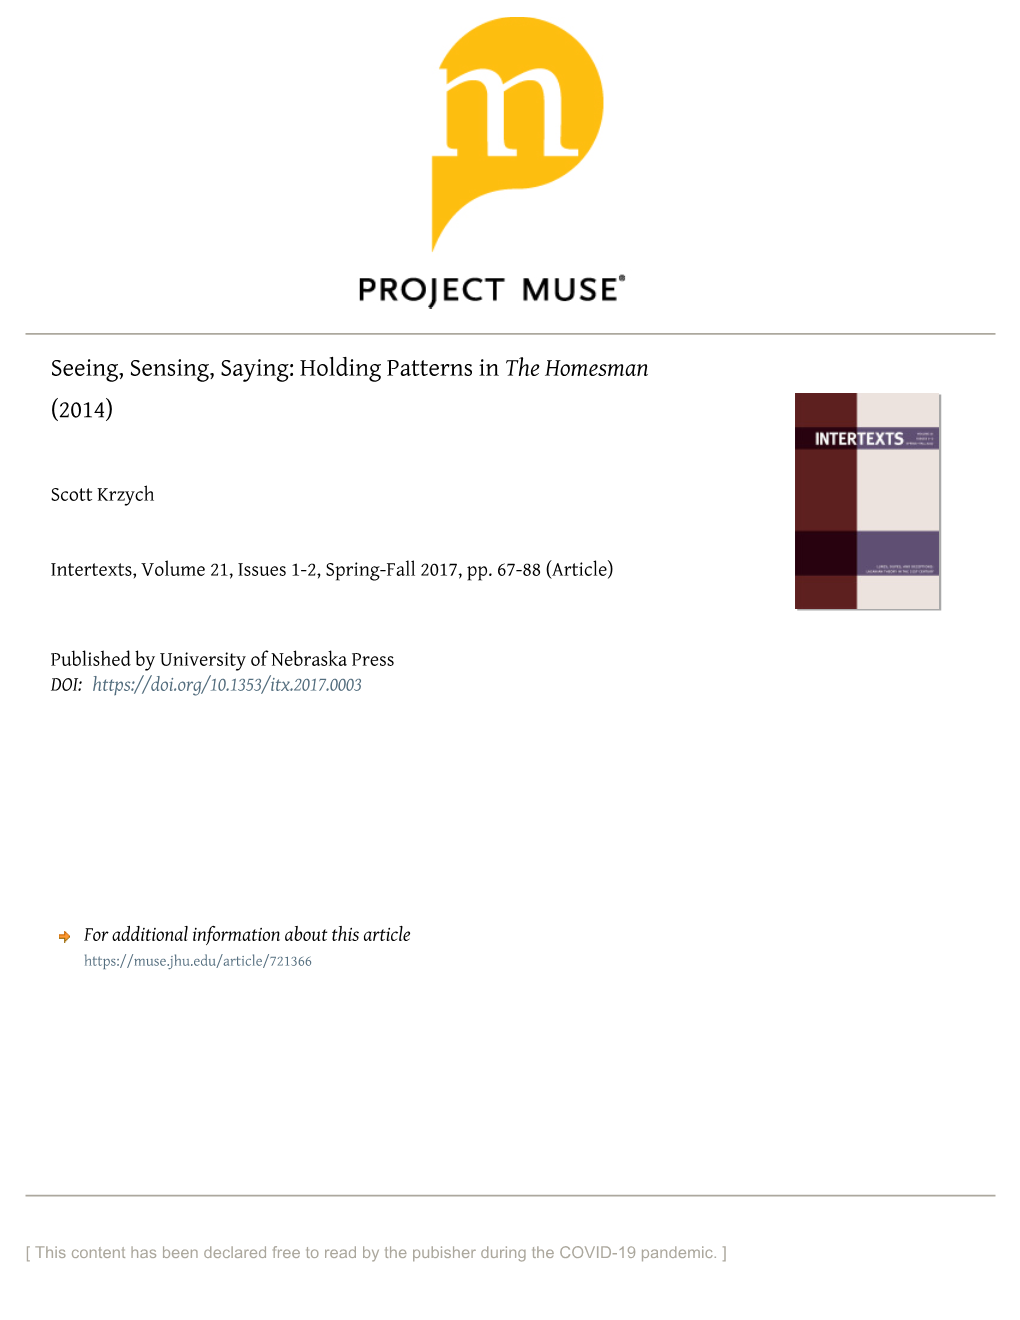 Seeing, Sensing, Saying: Holding Patterns in the Homesman (2014)